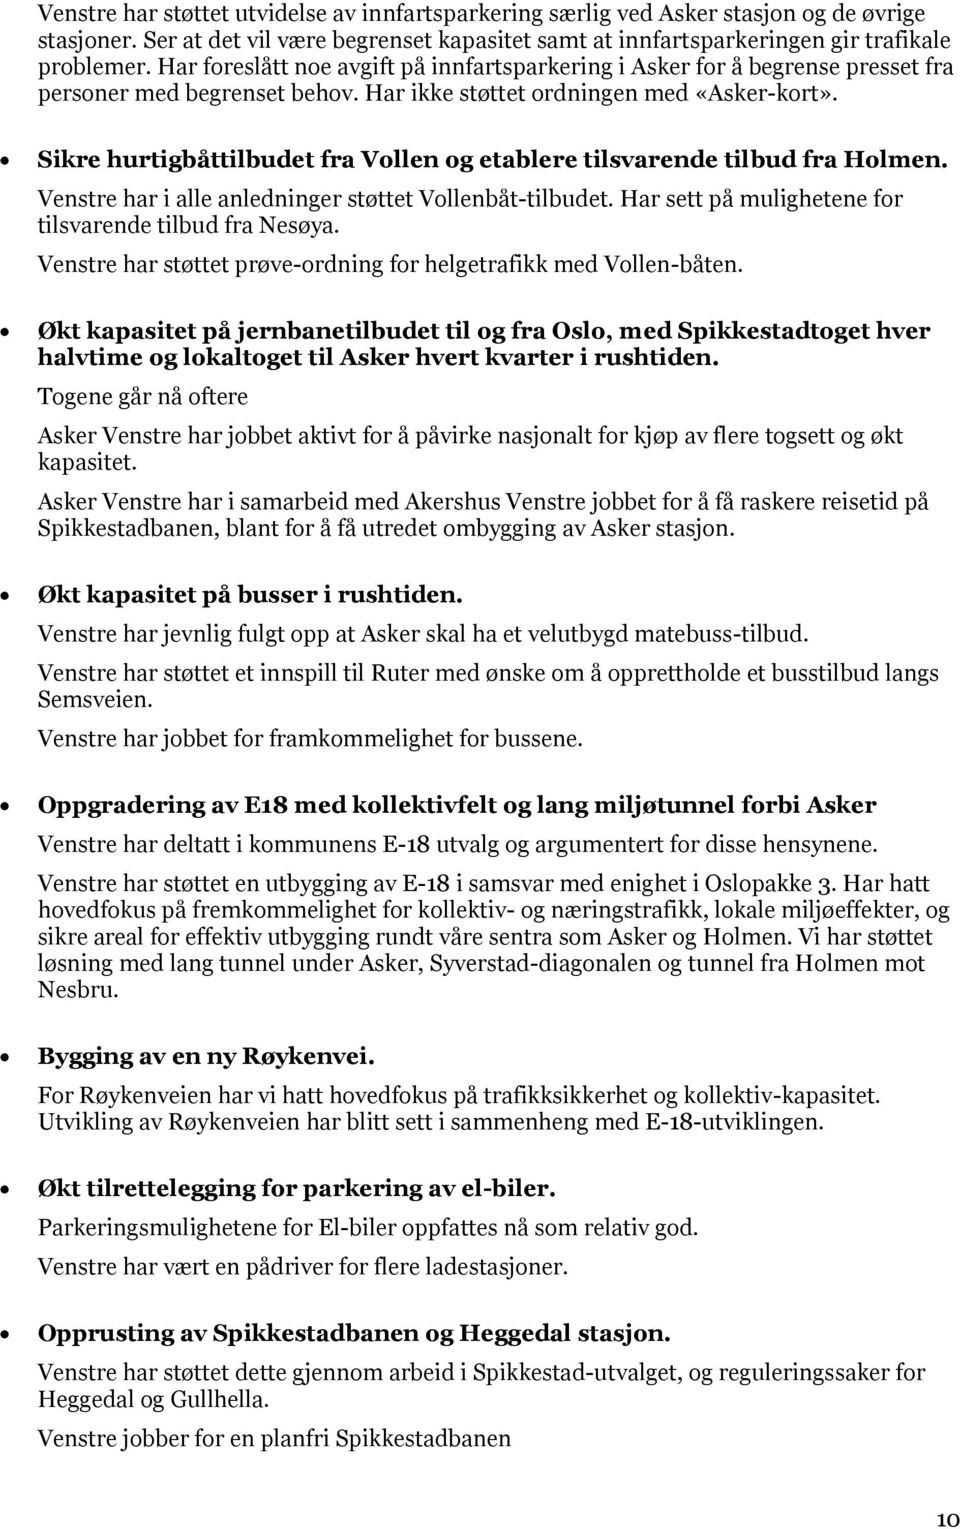 Sikre hurtigbåttilbudet fra Vollen og etablere tilsvarende tilbud fra Holmen. Venstre har i alle anledninger støttet Vollenbåt-tilbudet. Har sett på mulighetene for tilsvarende tilbud fra Nesøya.